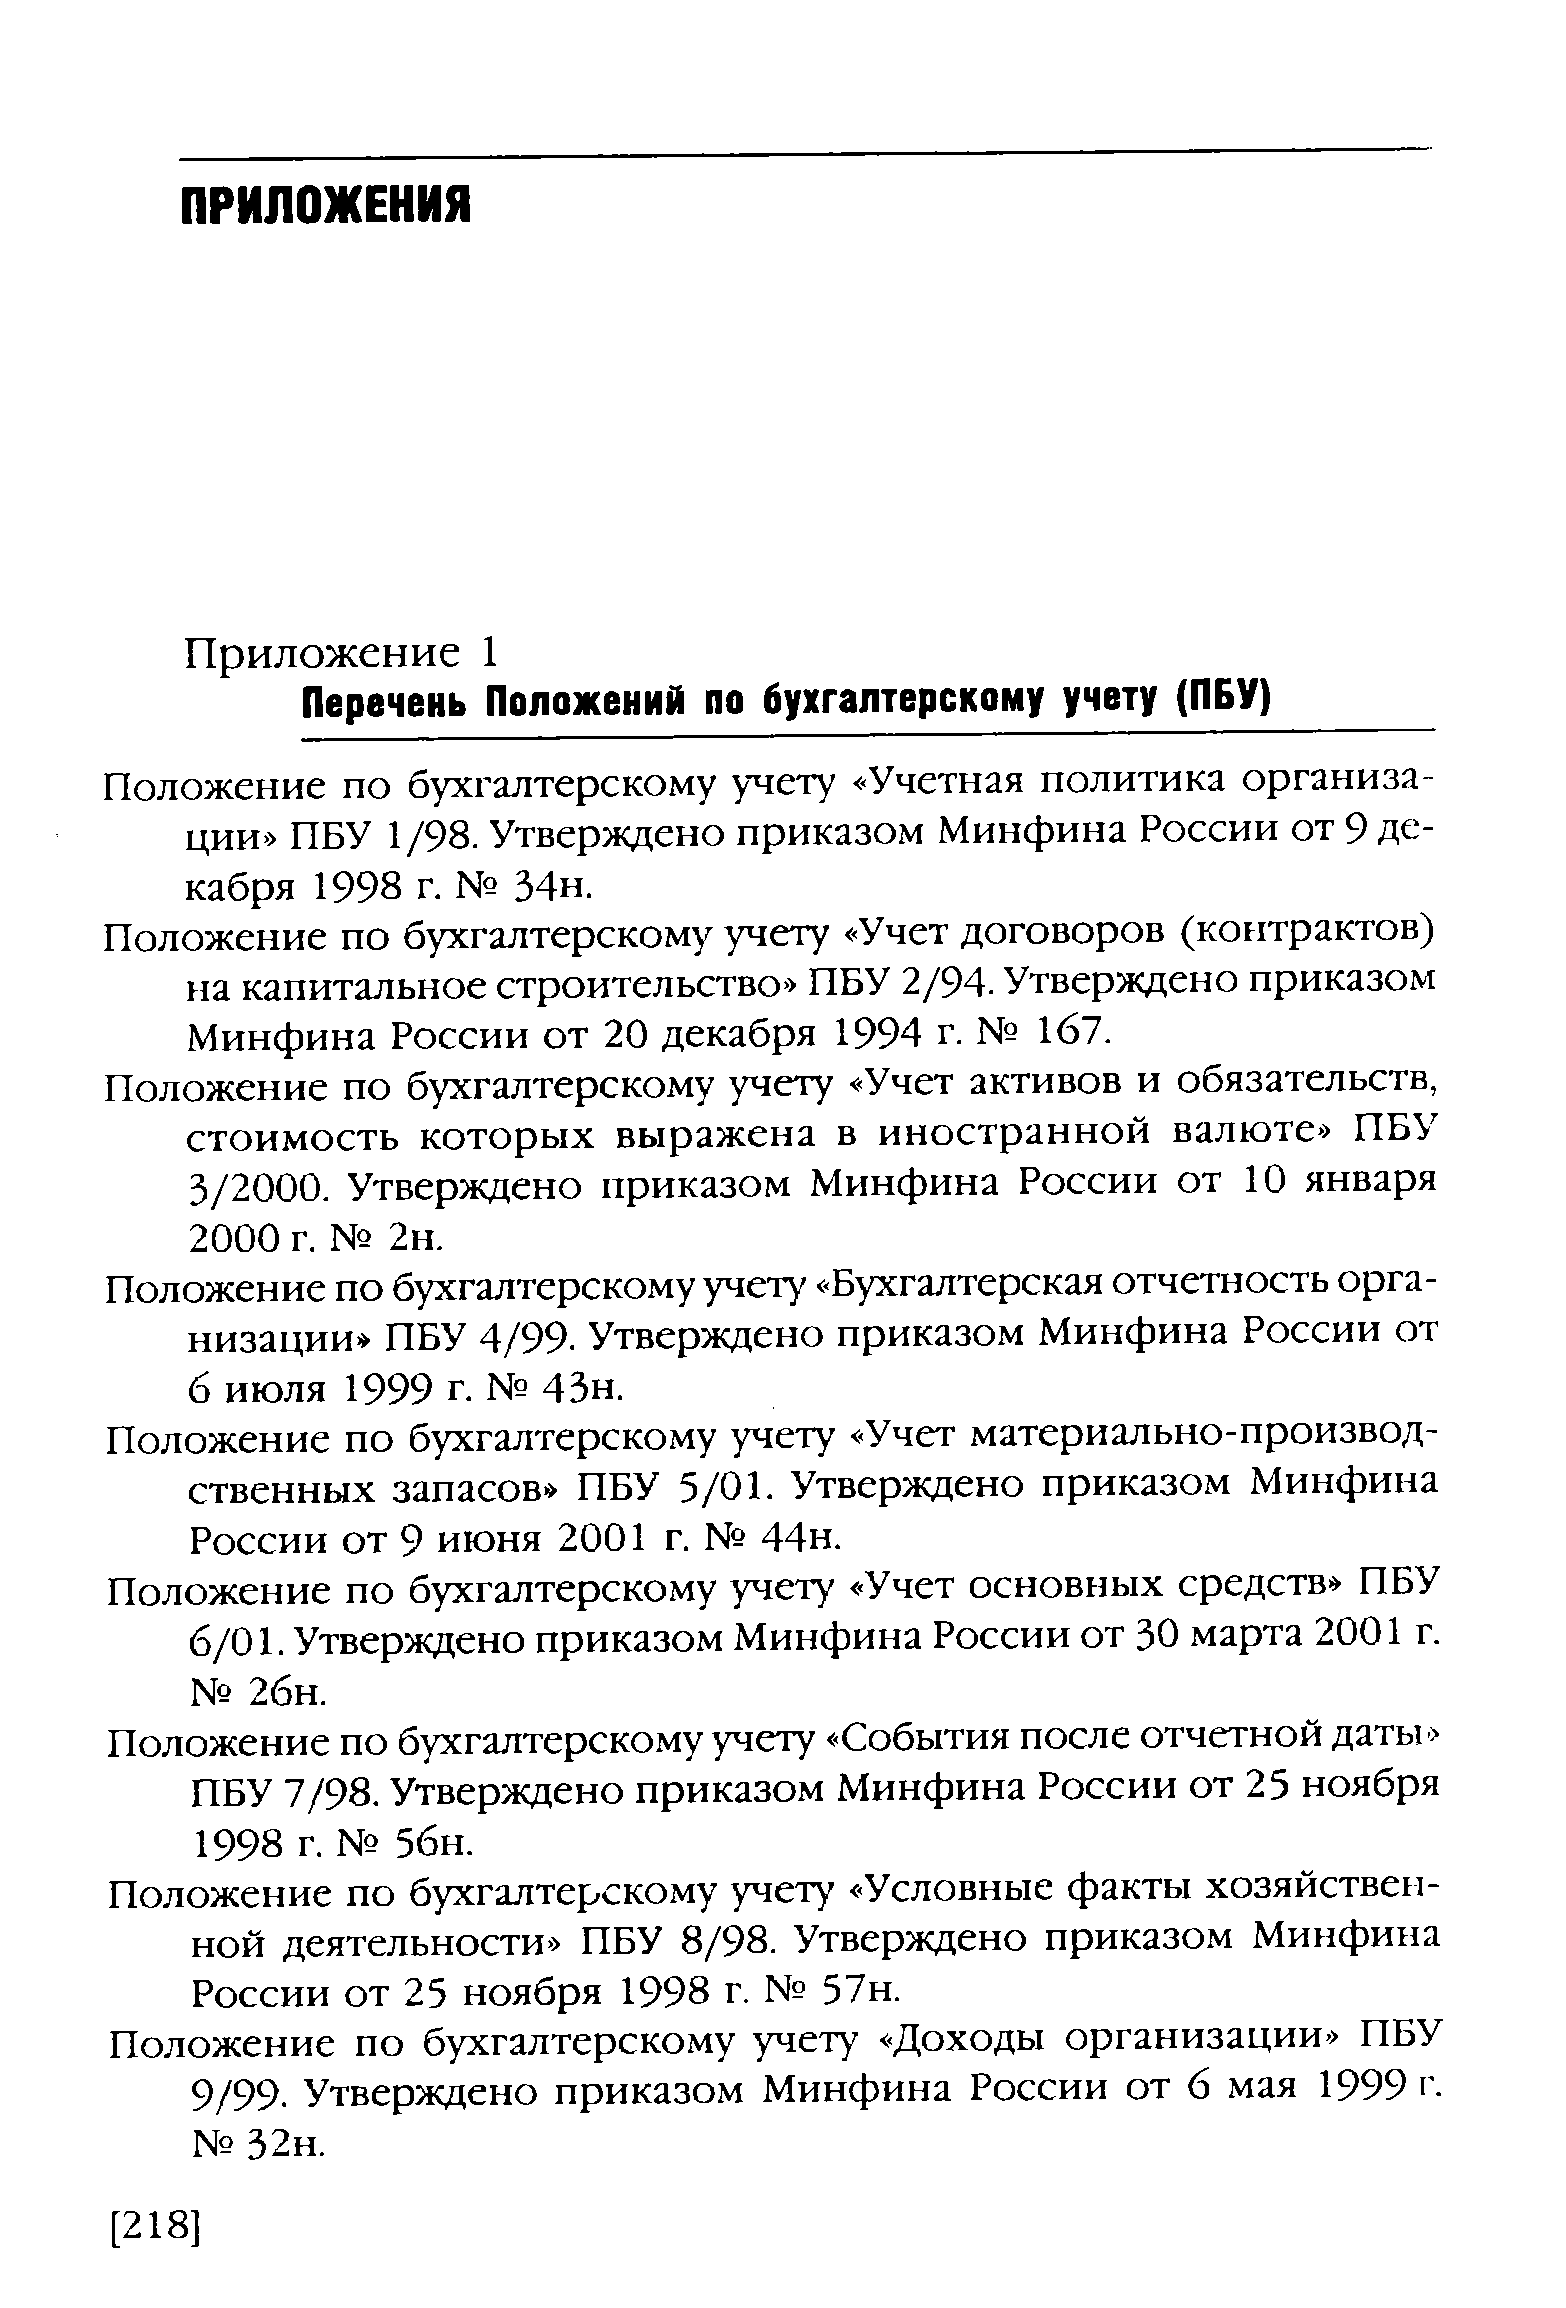 Положение по бухгалтерскому учету Учетная политика организации ПБУ 1/98. Утверждено приказом Минфина России от 9 декабря 1998 г. 34н.
